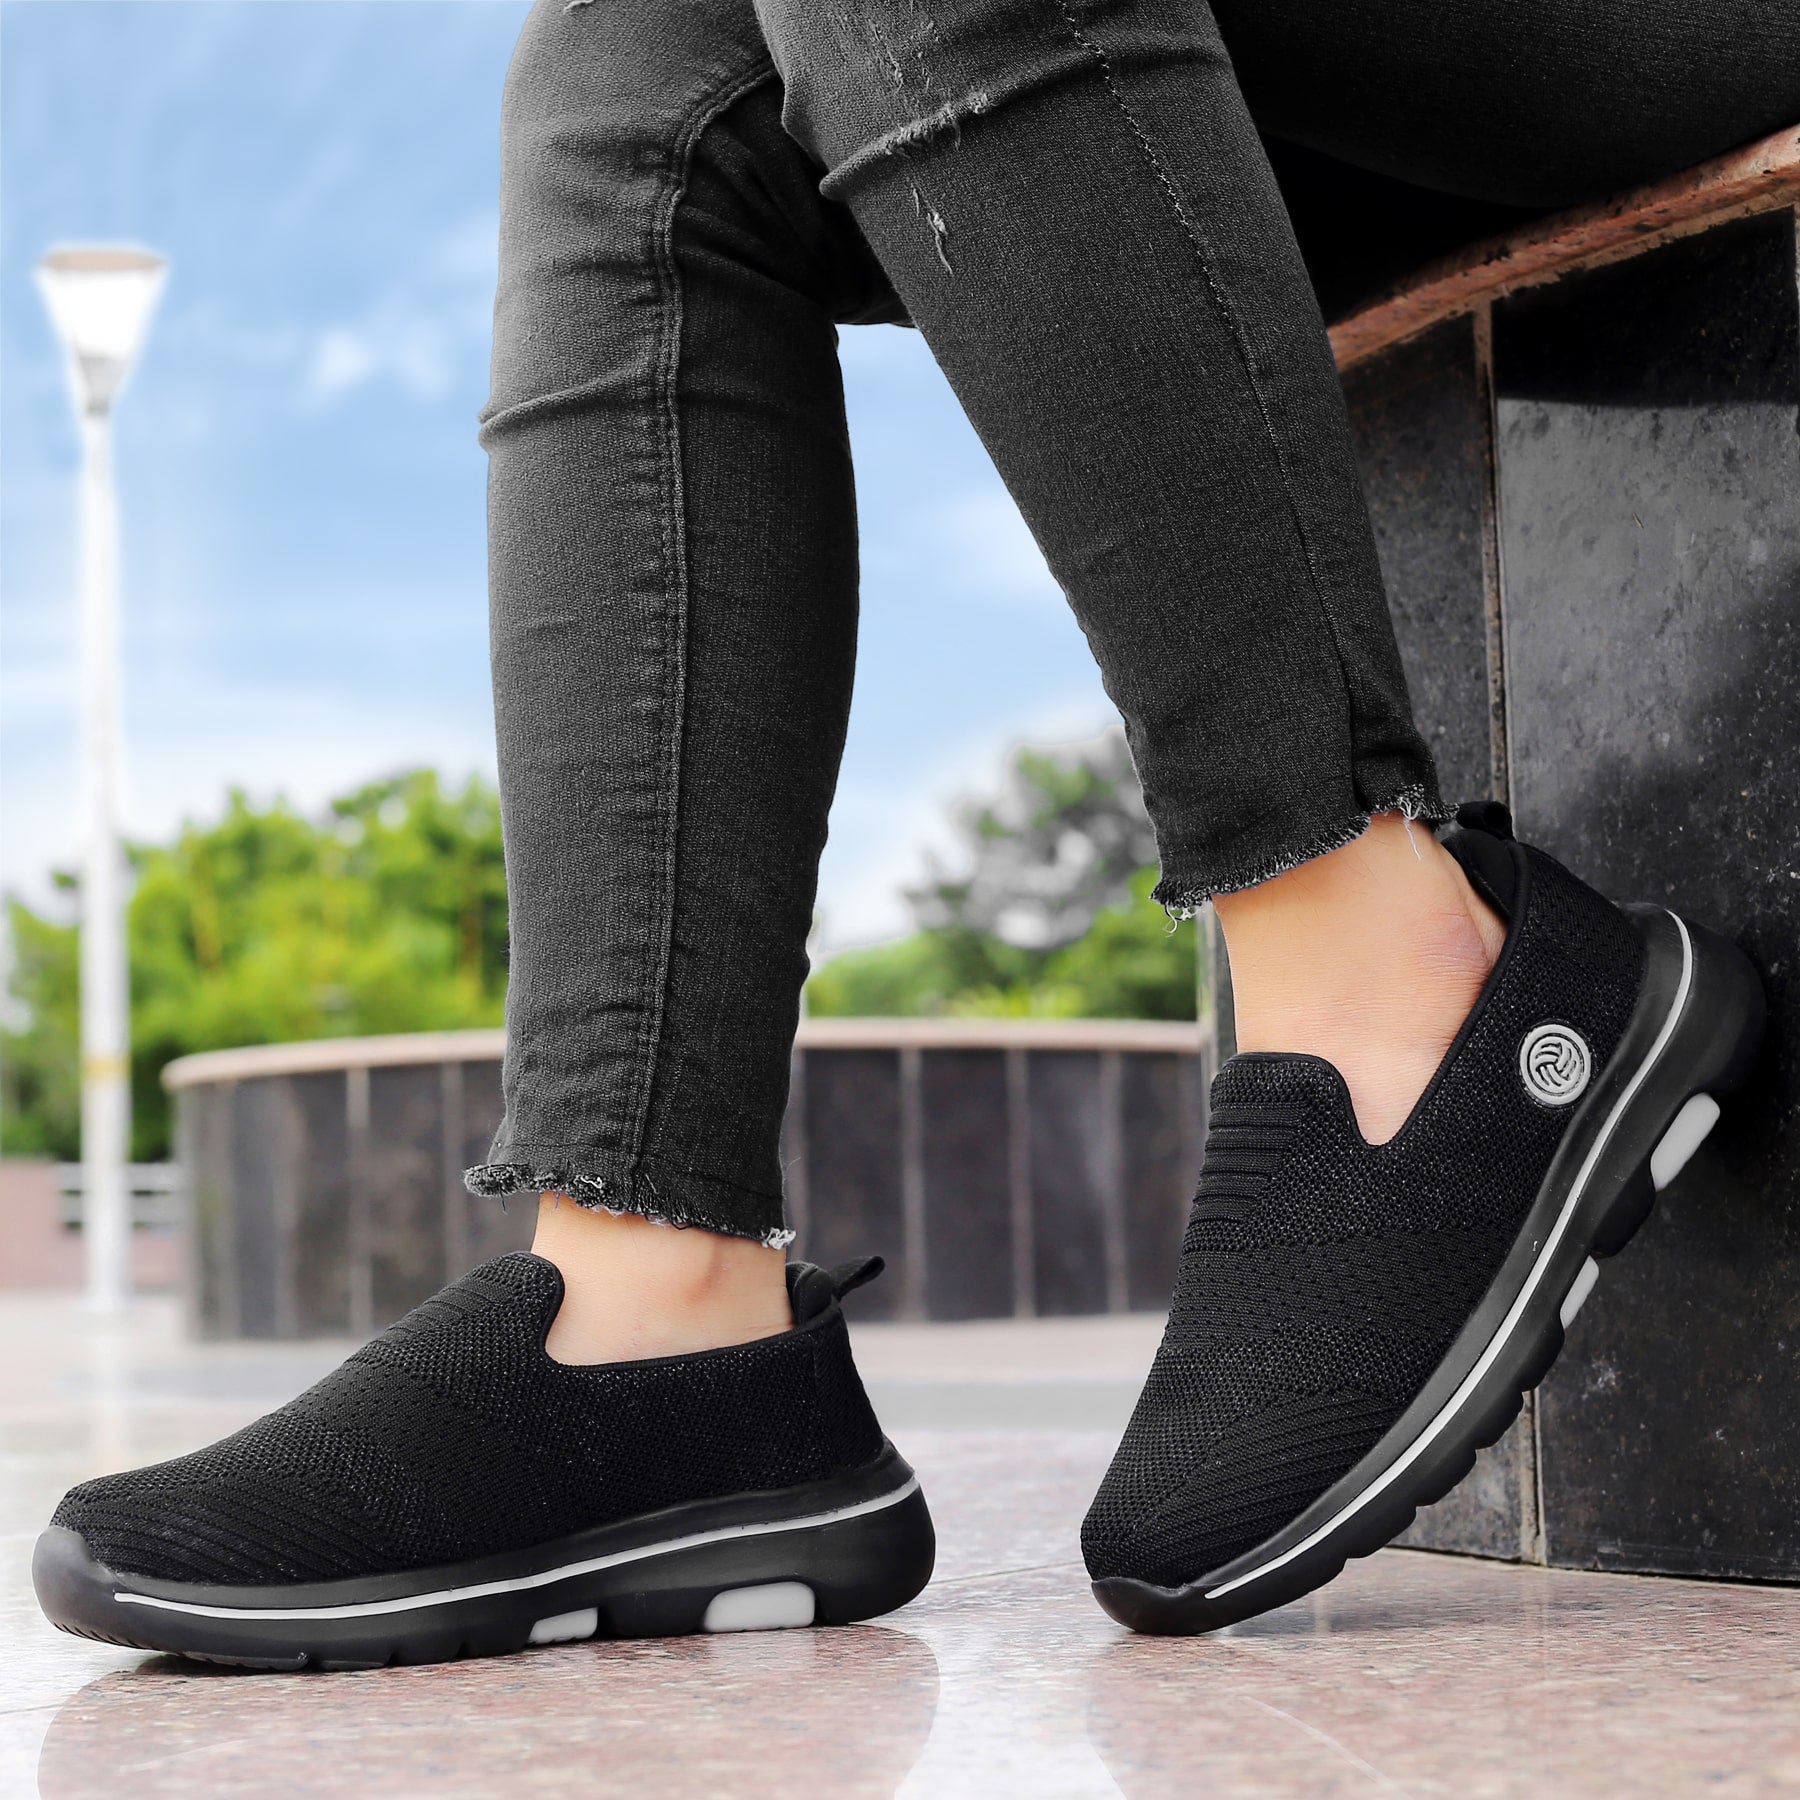 Bacca Bucci NIMBUS Women All-Day wear Joggers Slip-on Walking Shoes